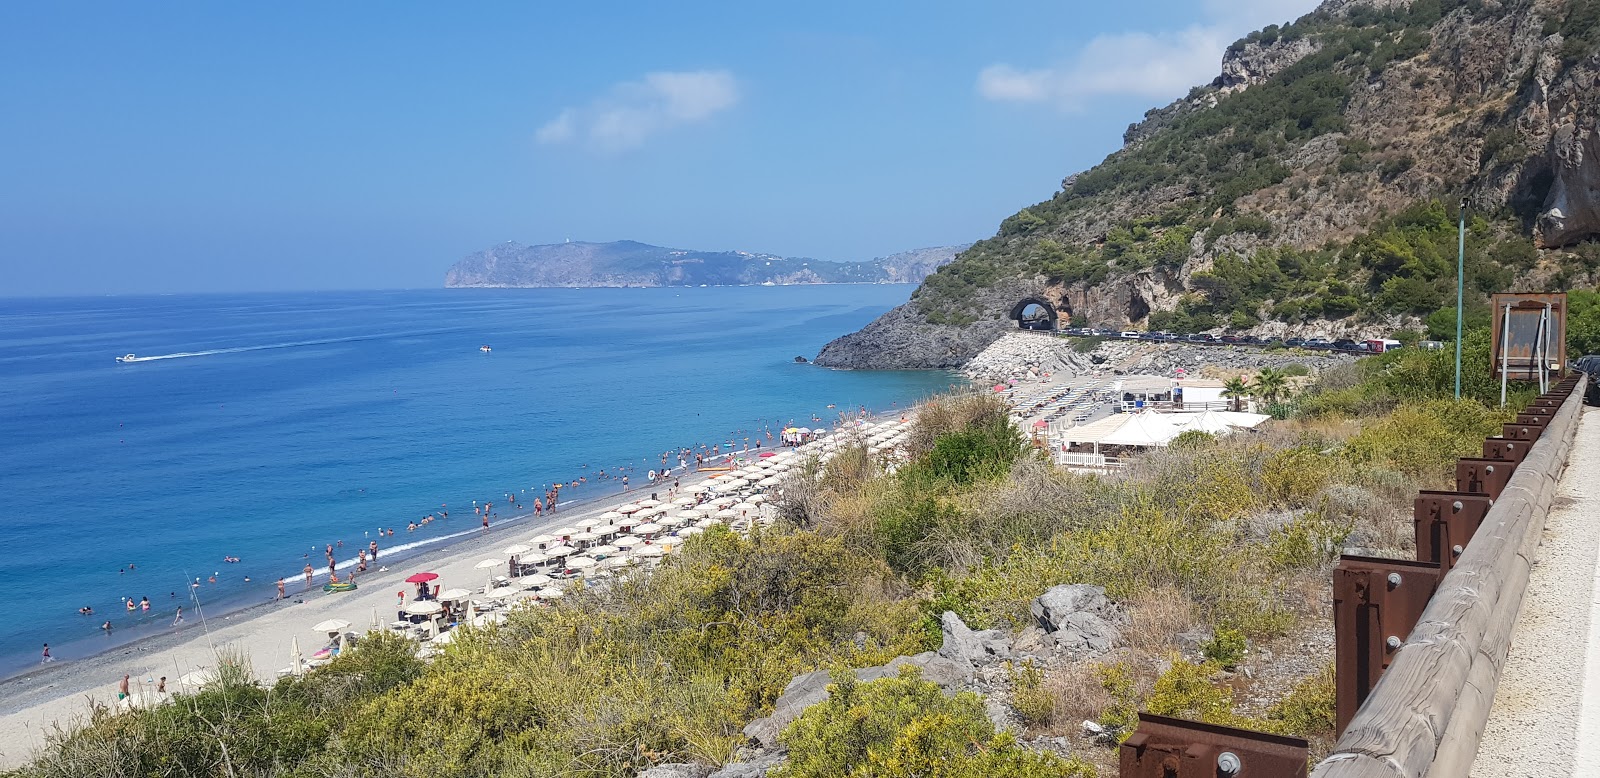 Foto af Spiaggia del Troncone med rummelig kyst